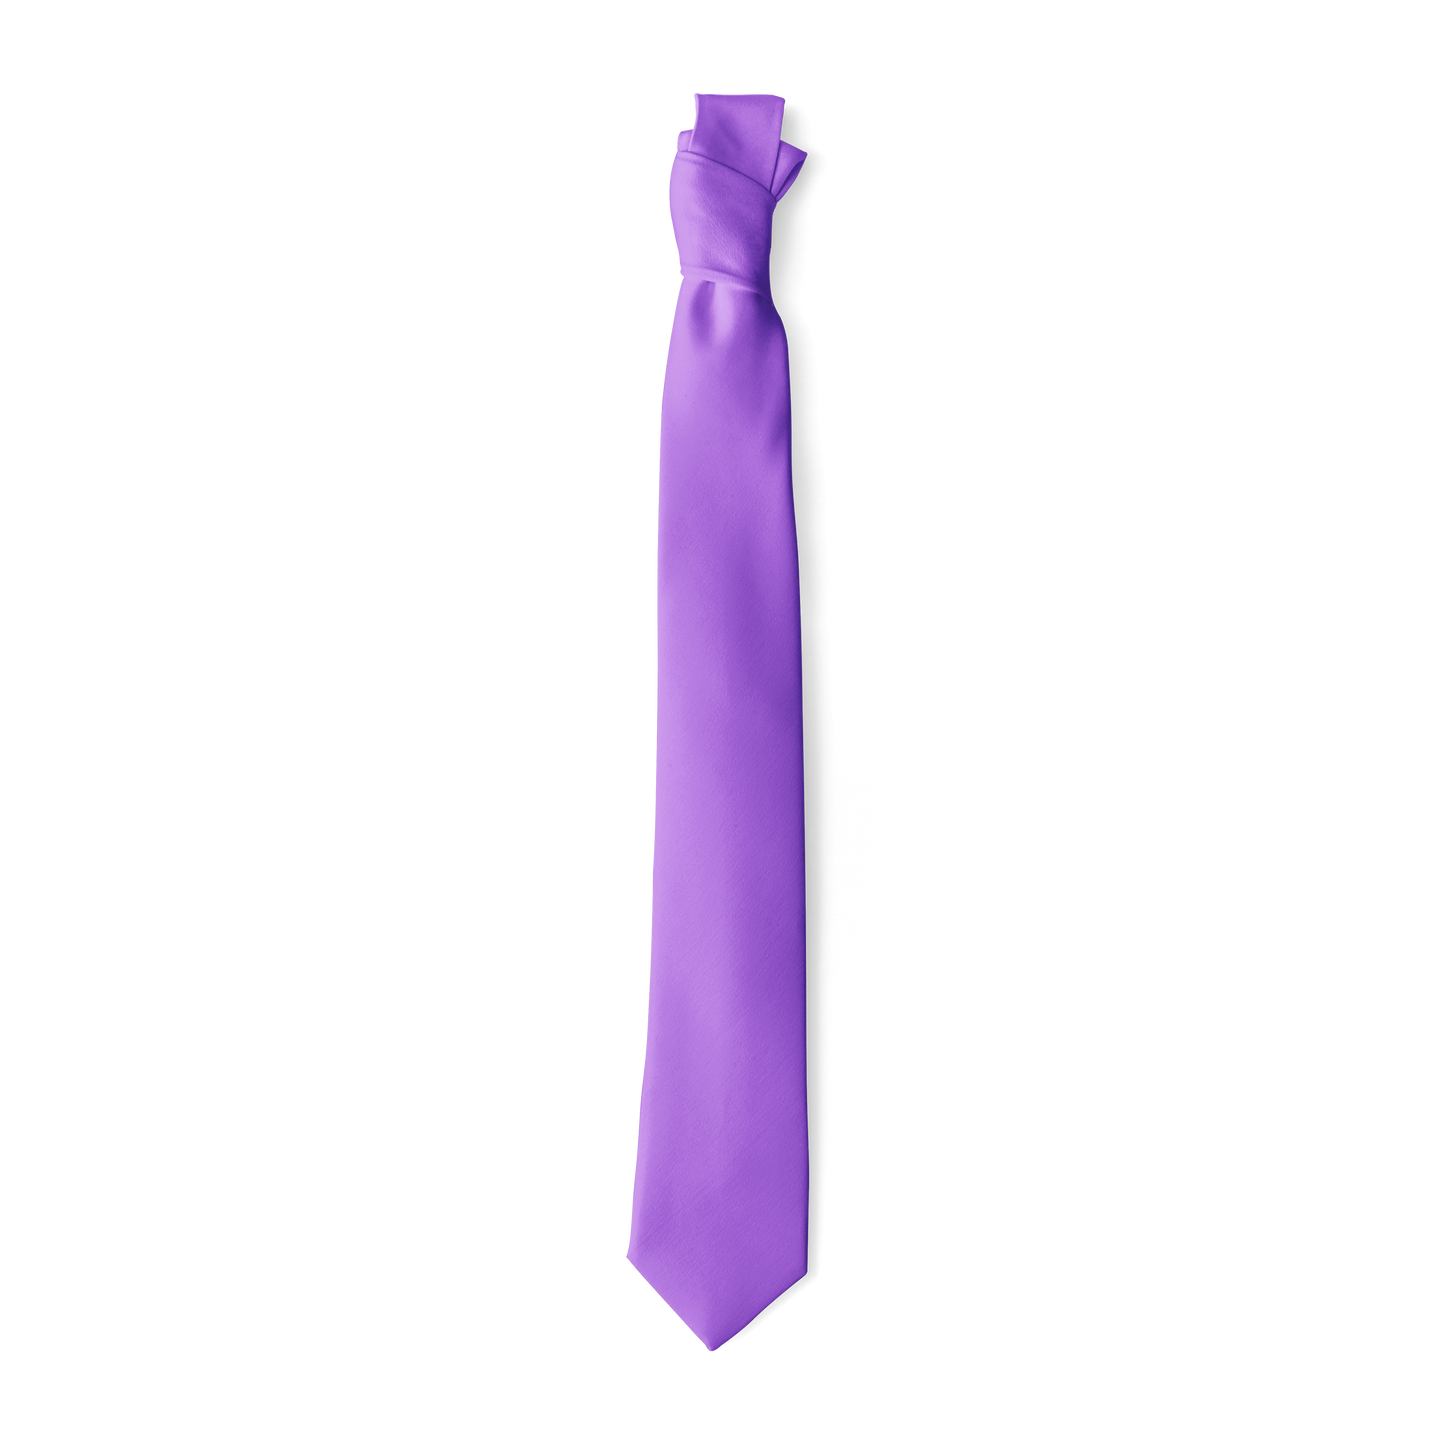 Lavender Skinny Tie